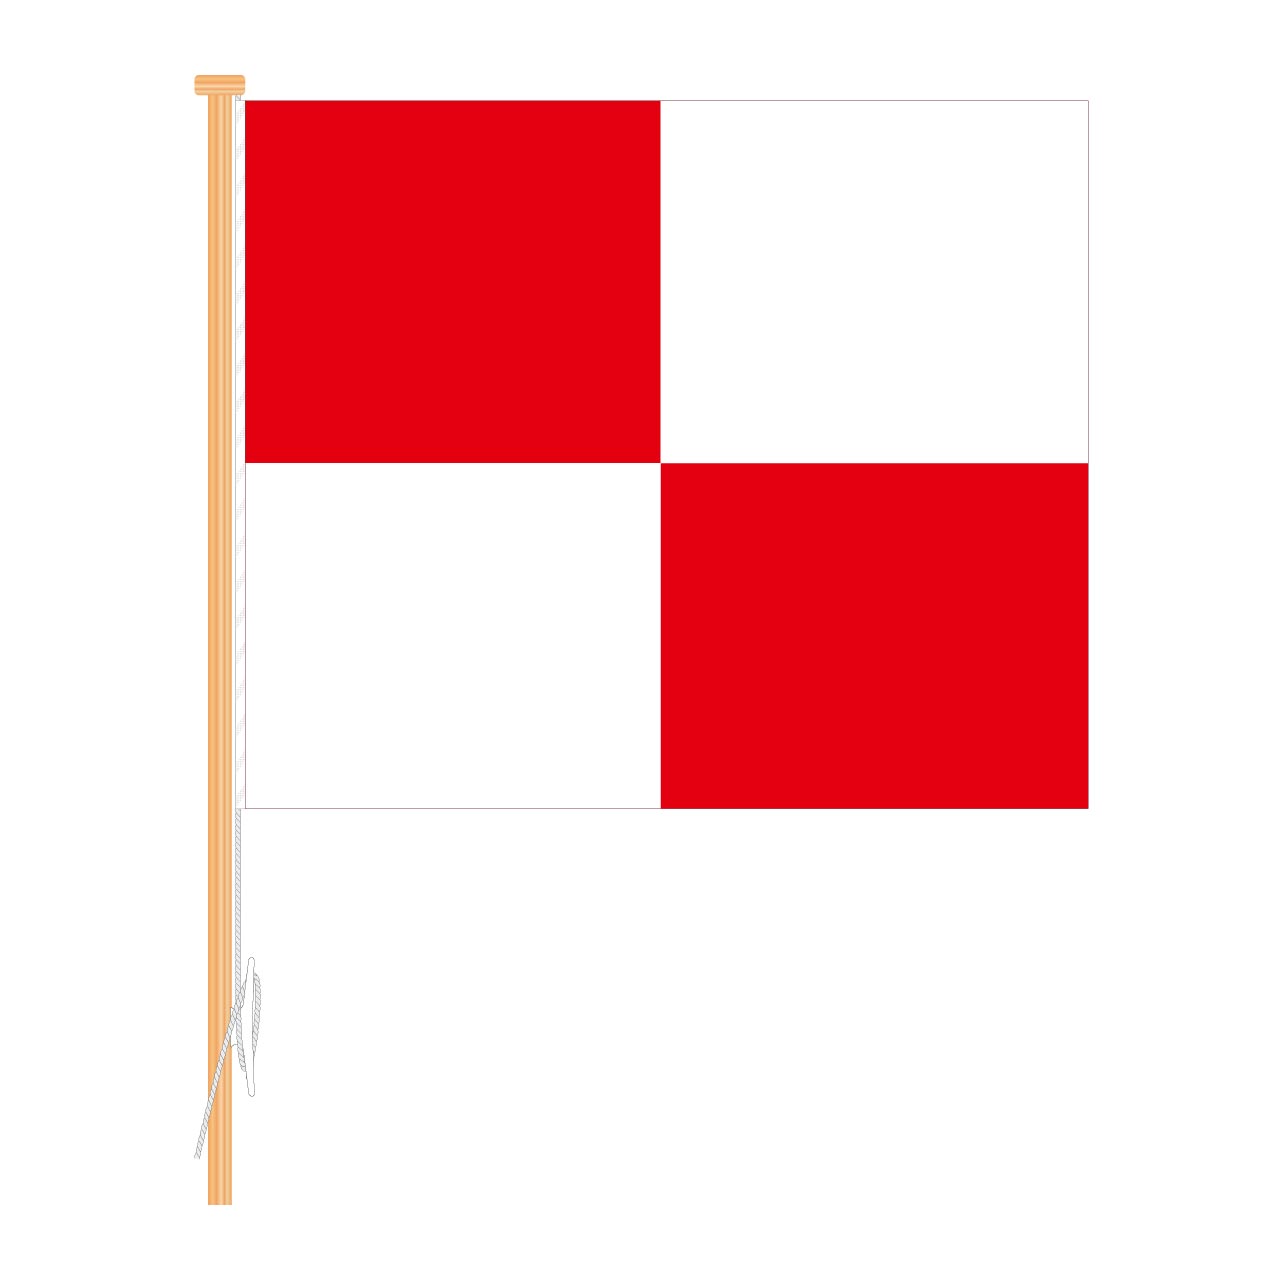 Signalflagge "U" Uniform